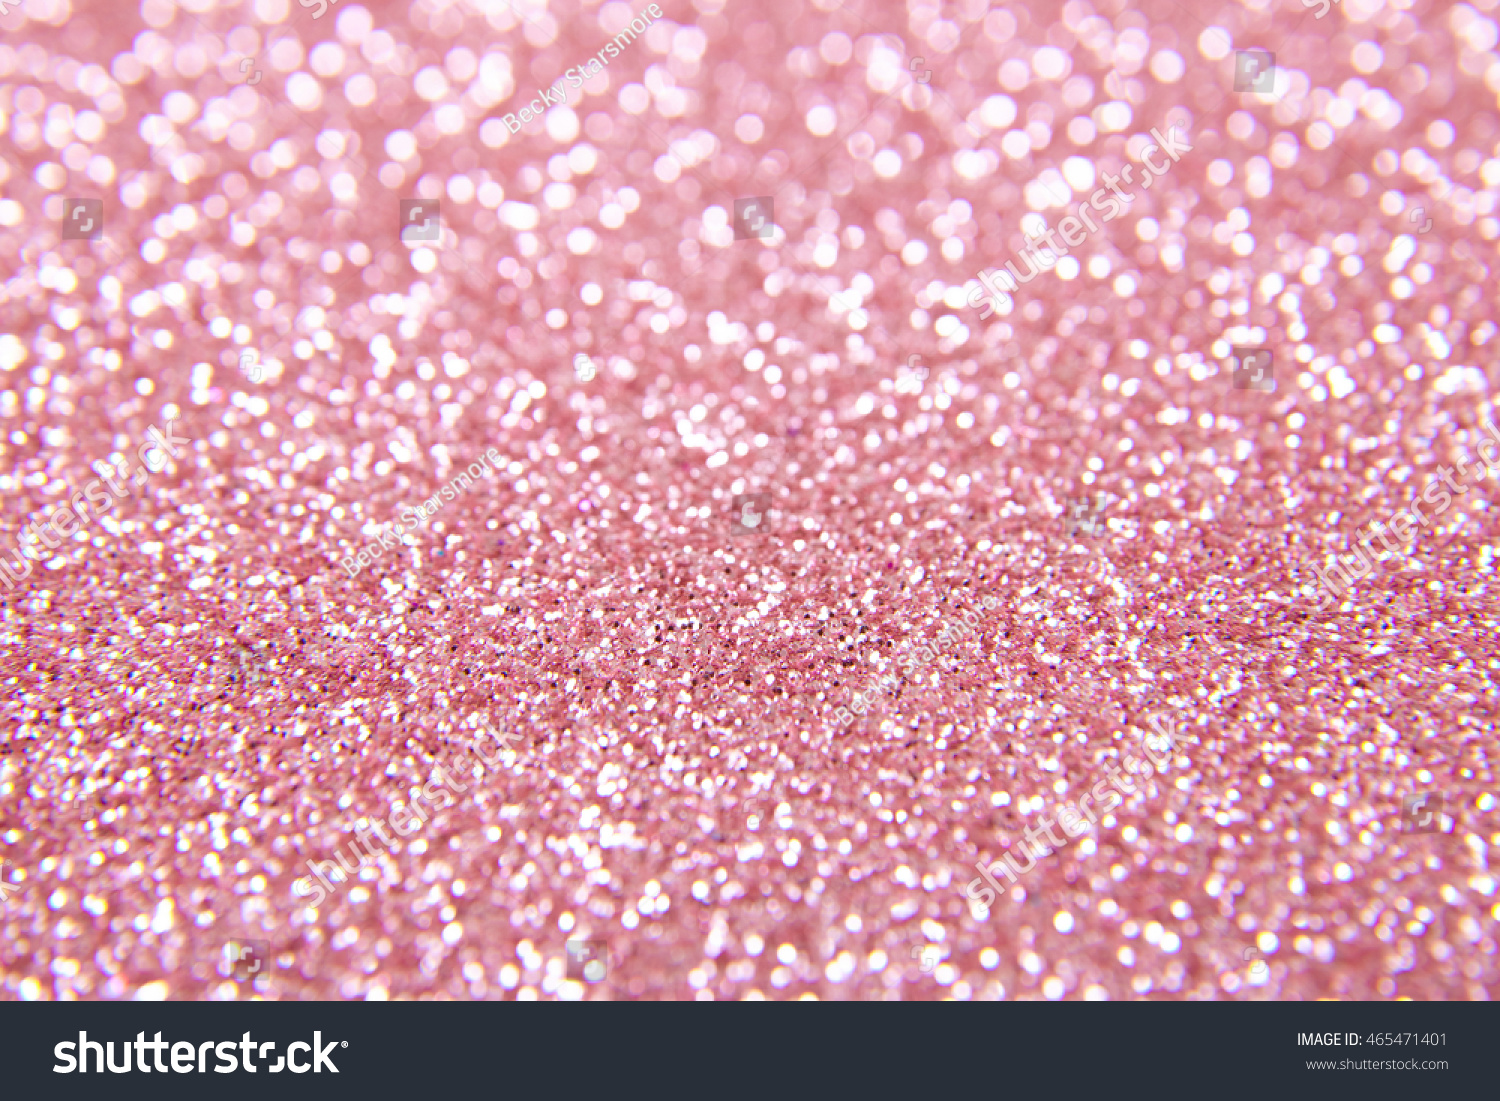 Full Page Close Pastel Pink Glitter, arkistovalokuva 465471401 Shutterstock...